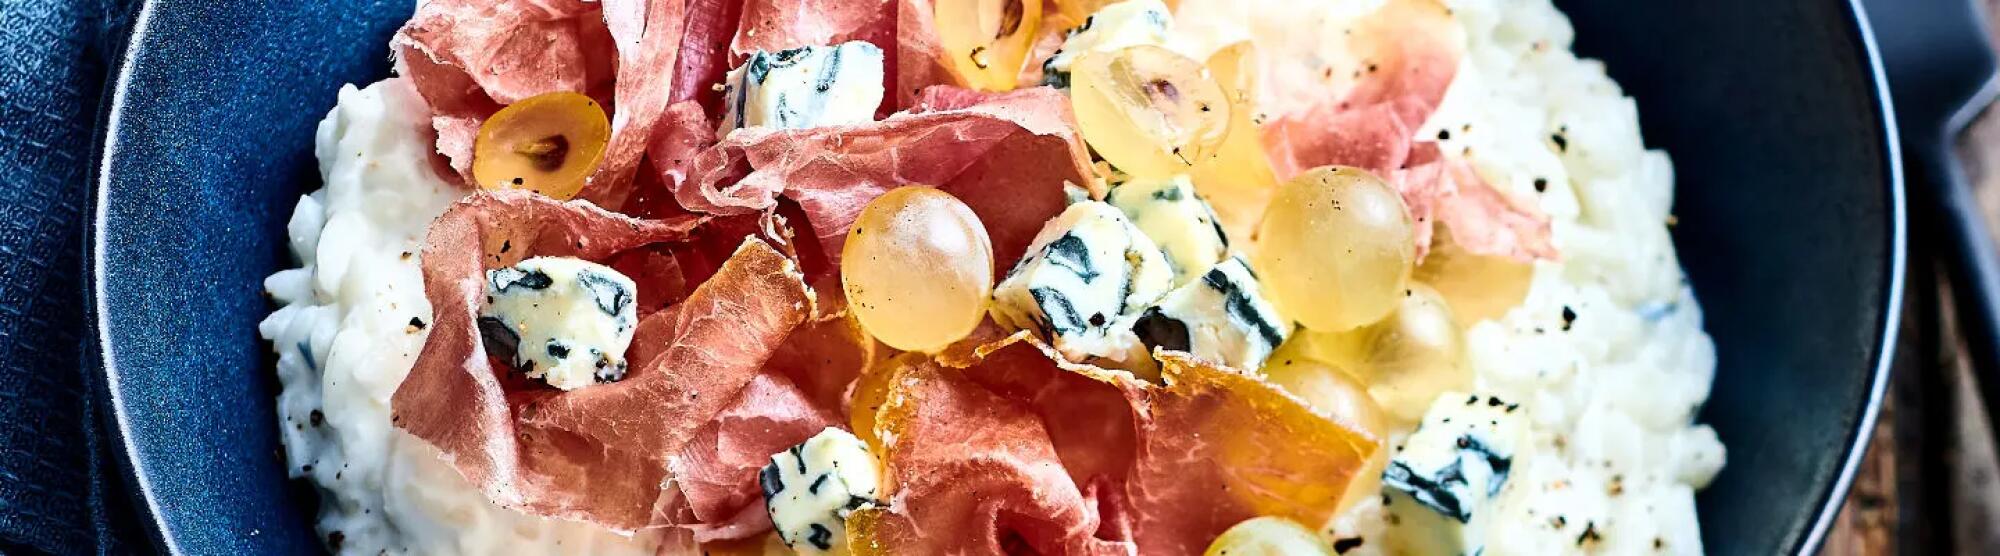 Recette : Risotto au fromage bleu, jambon cru et raisin blanc